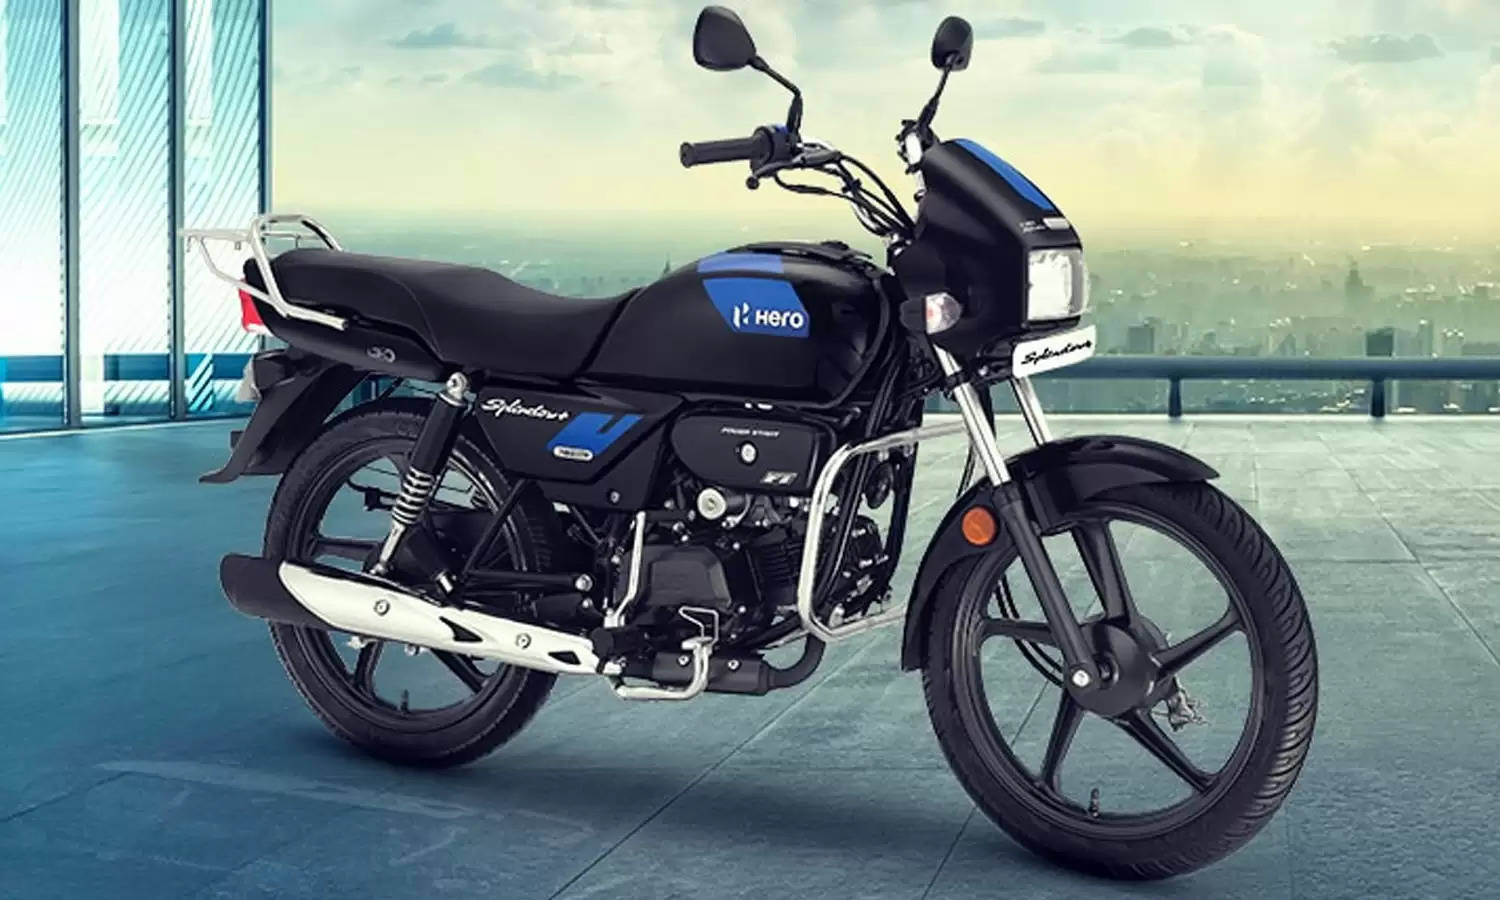 Splendor Plus बाइक को मात्र 25,000 रुपये में खरीदने का सपना करें साकार, जानिए मॉडल और माइलेज